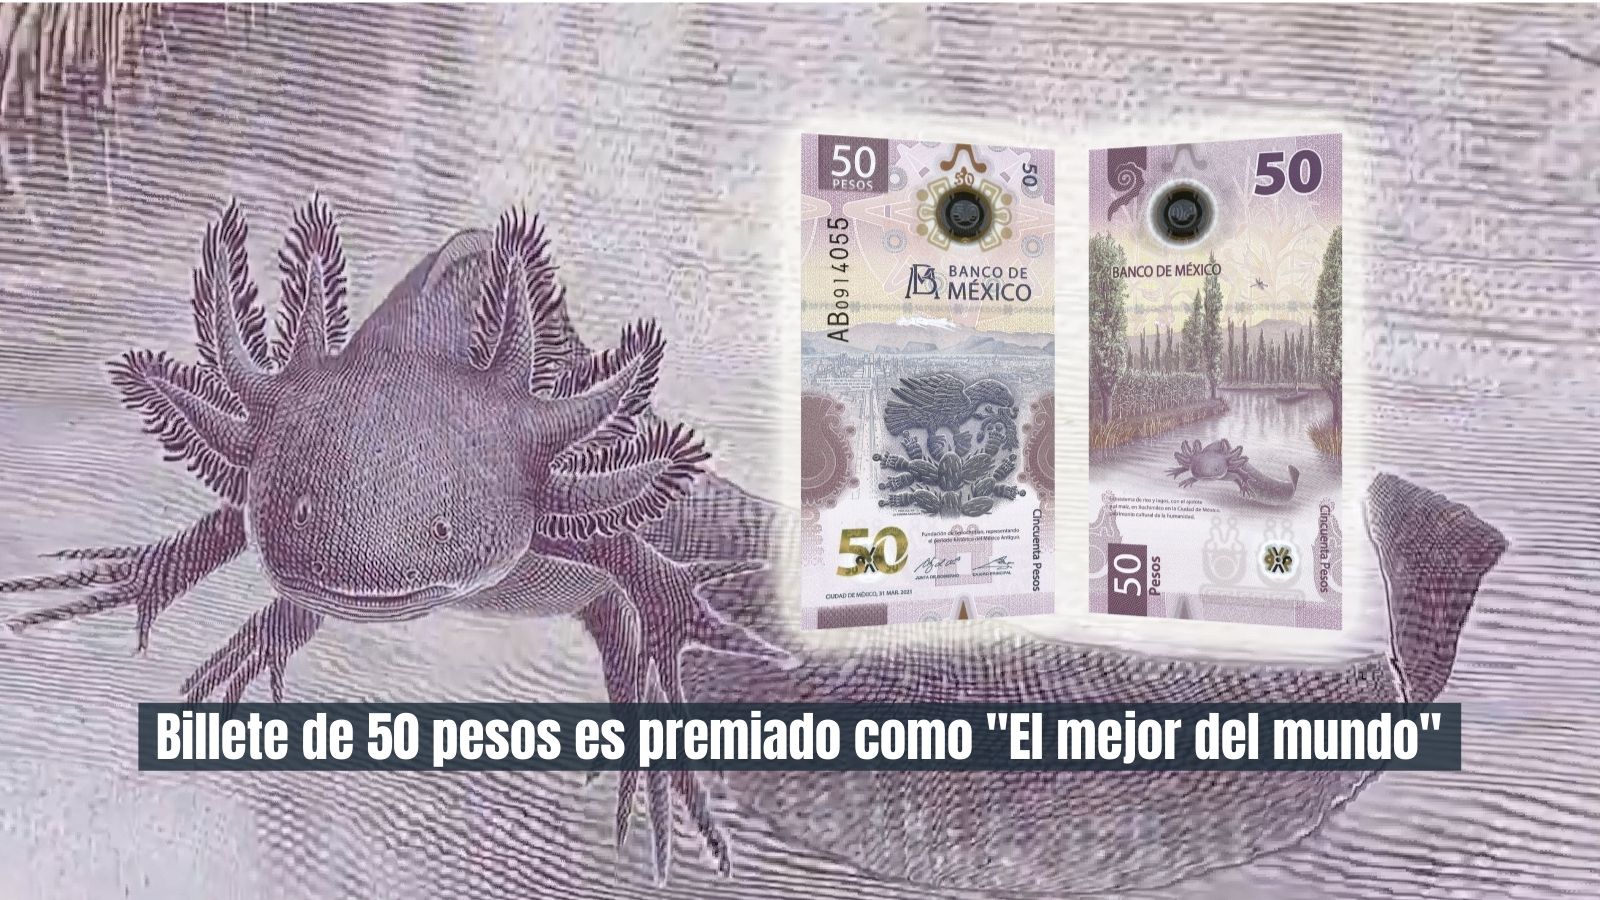 Banxico Billete de 50 pesos